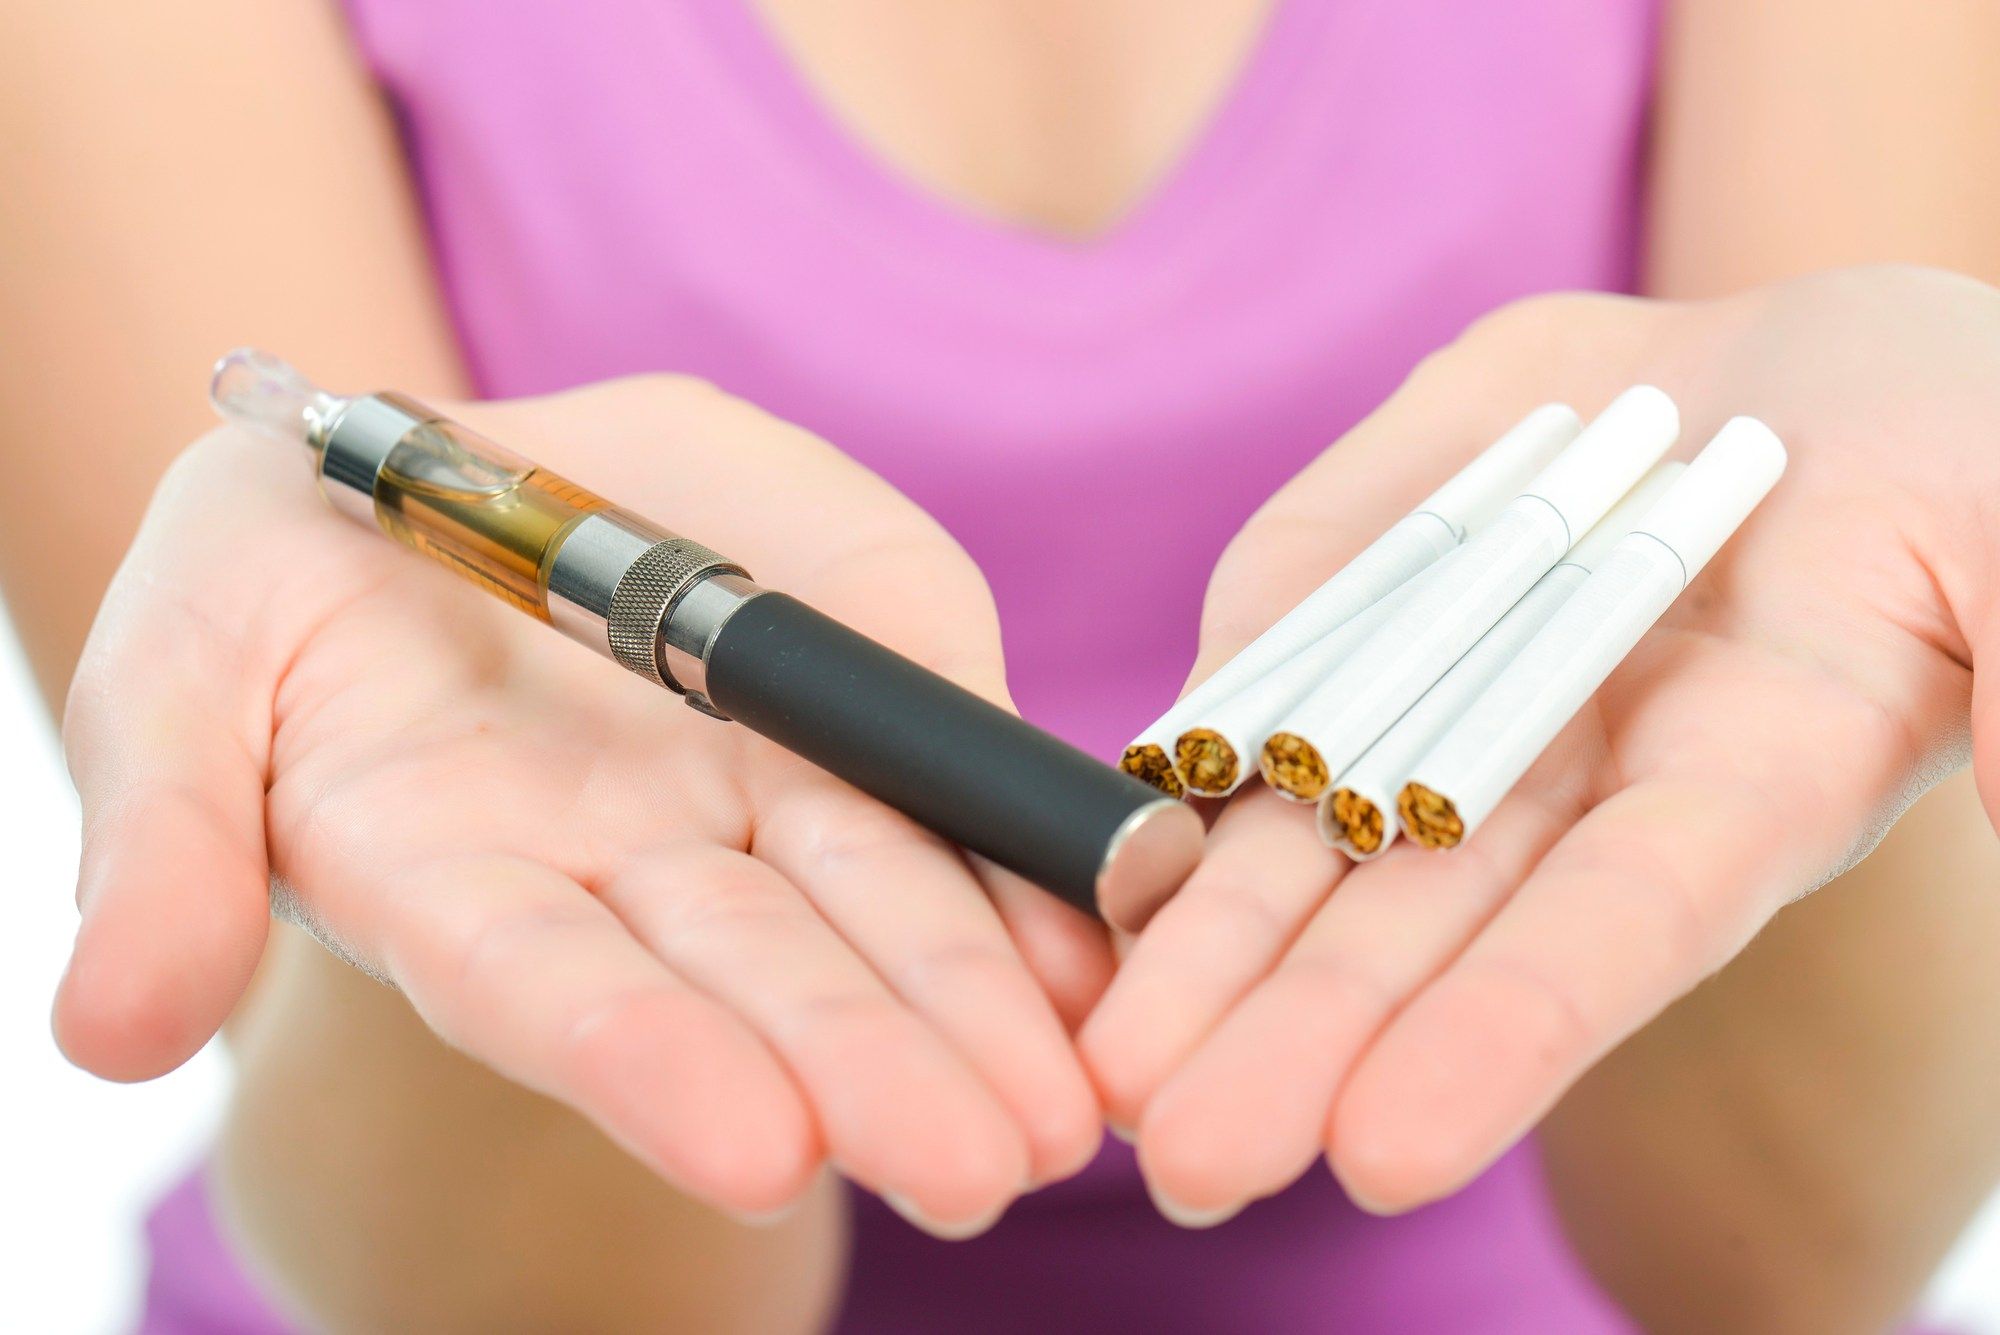 E-cigarette sales data shows increase